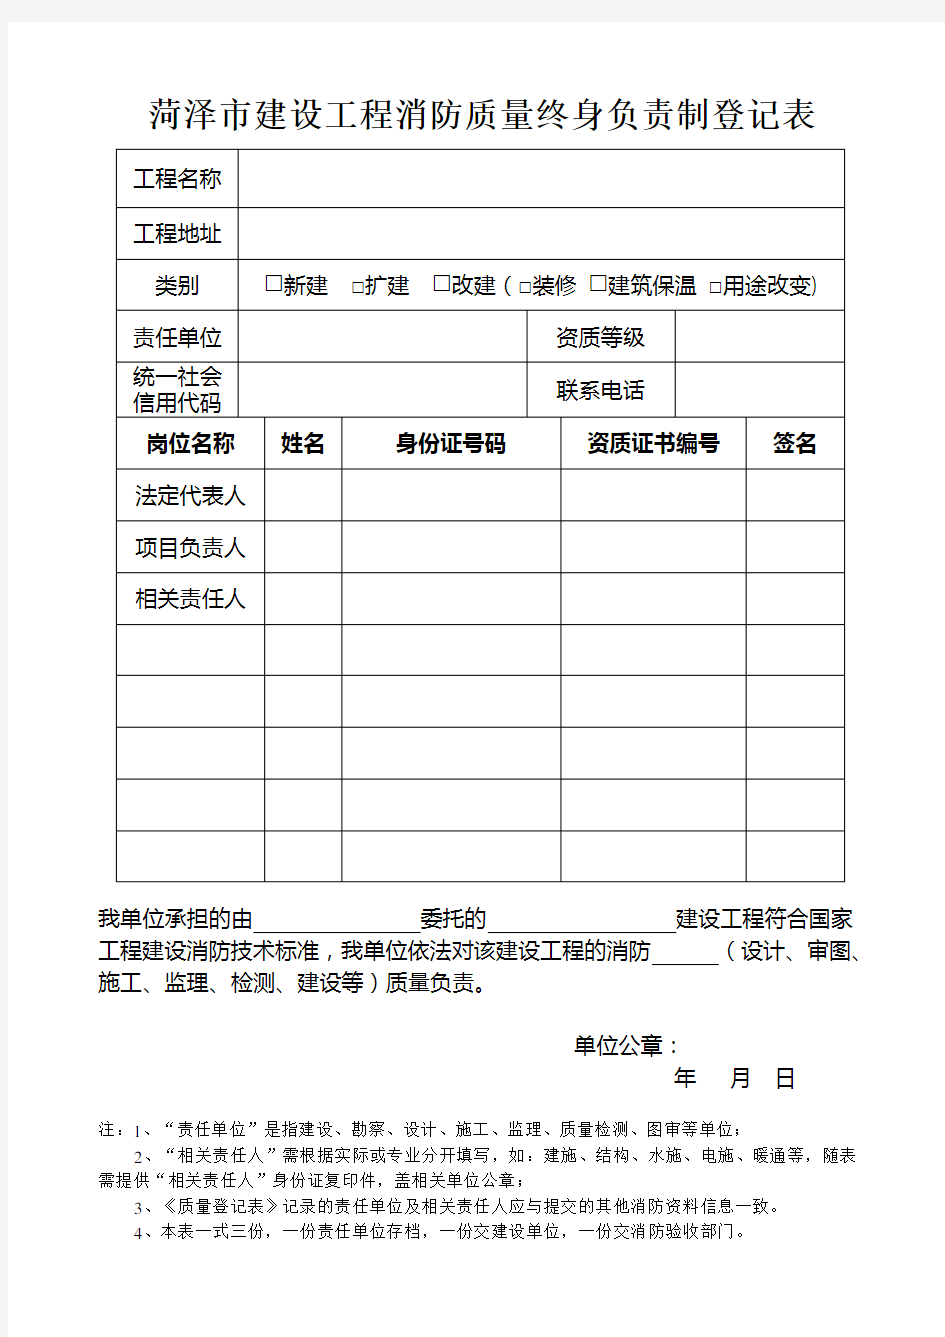 07-菏泽市-建设工程消防质量终身负责制登记表 